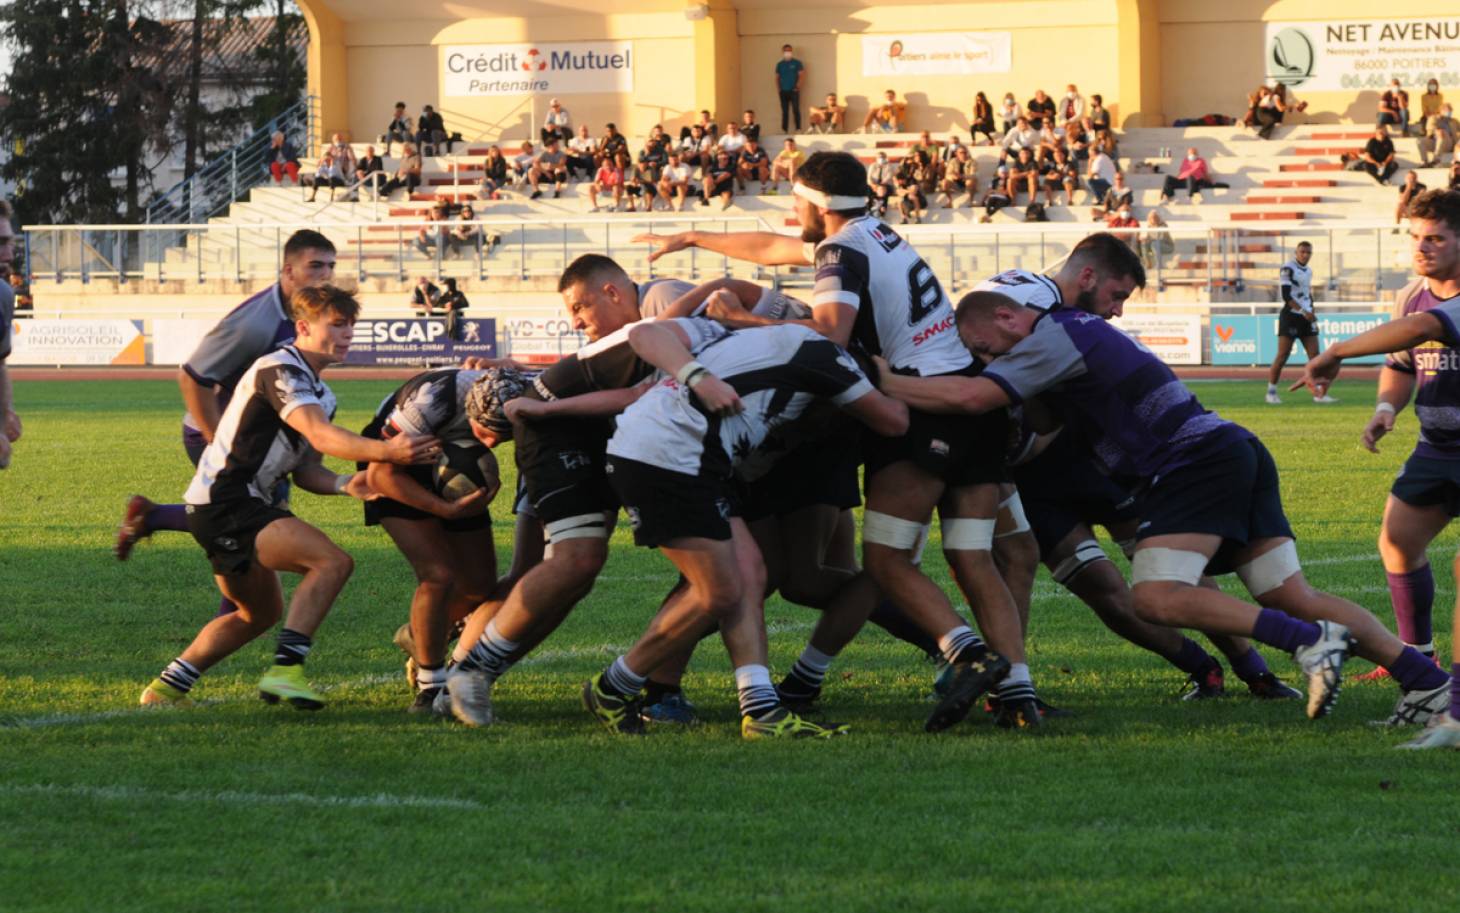 Rugby/Fédérale 2 - Match amical : le Stade Poitevin victorieux face au SA XV espoirs